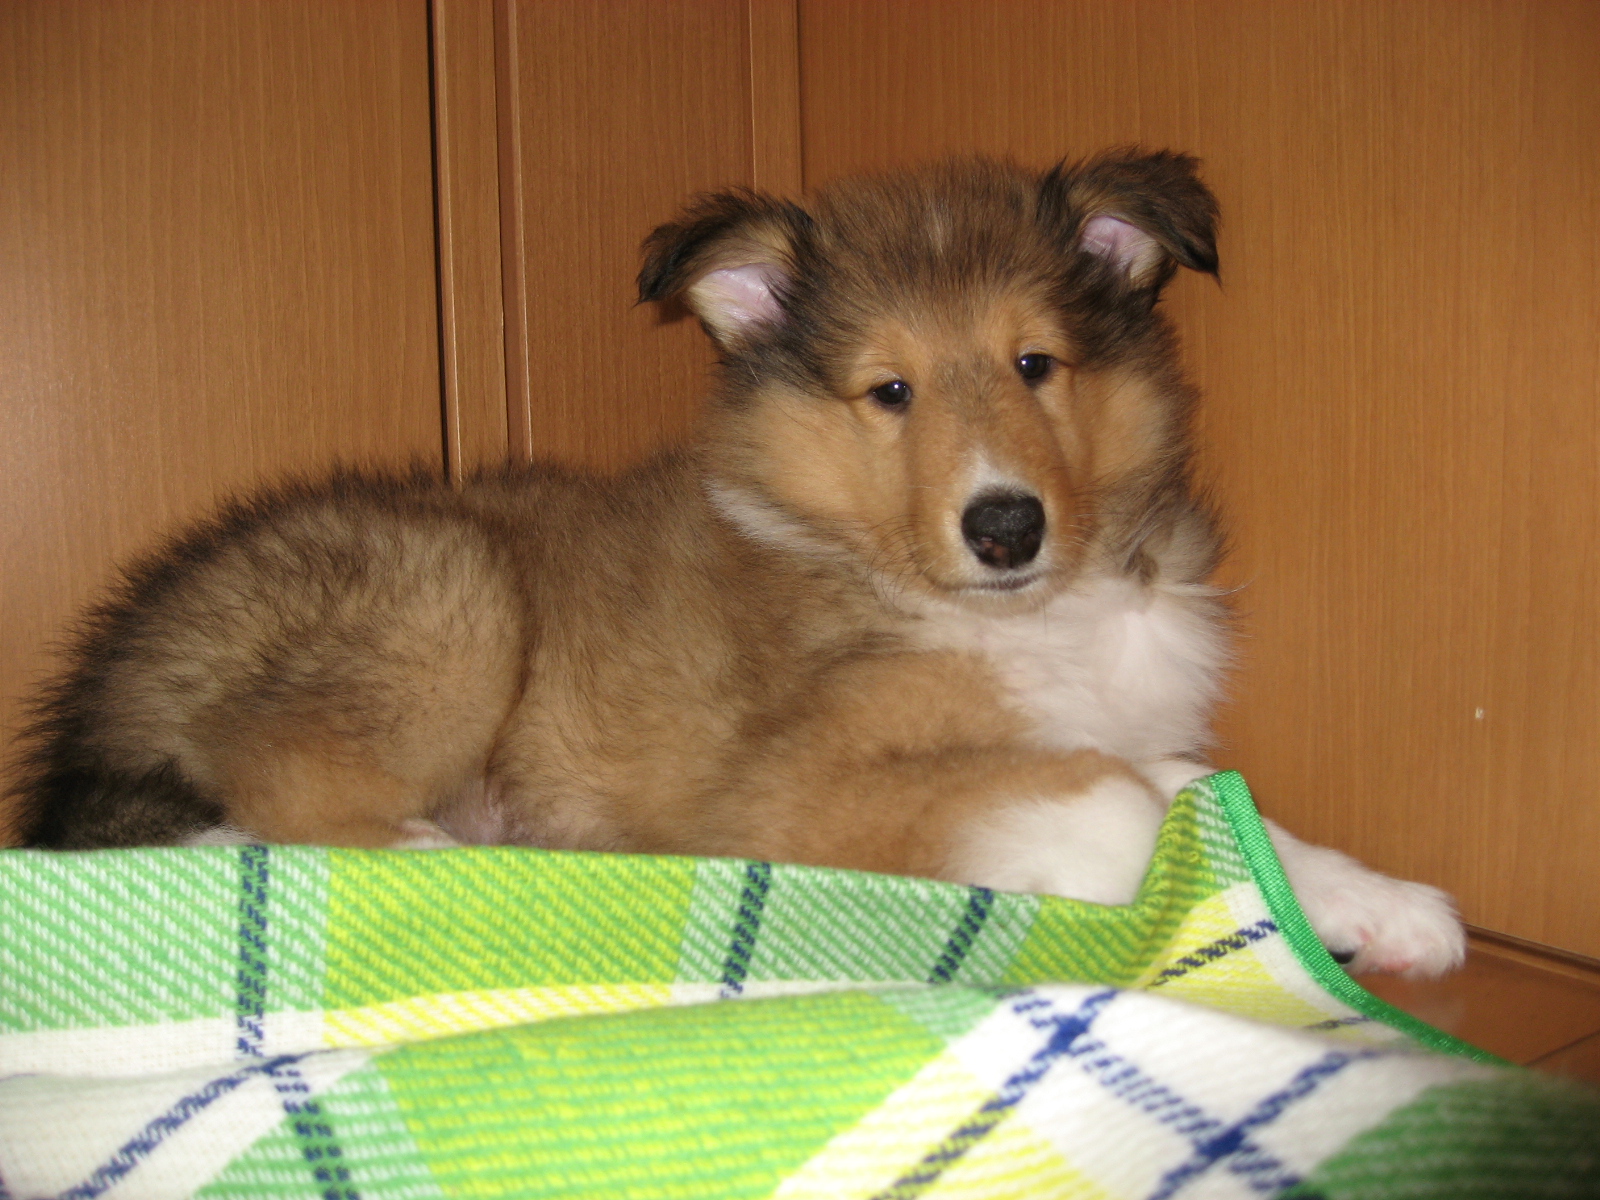 http://www.lucky-dog.jp/weblog/image/IMG_2401.JPG